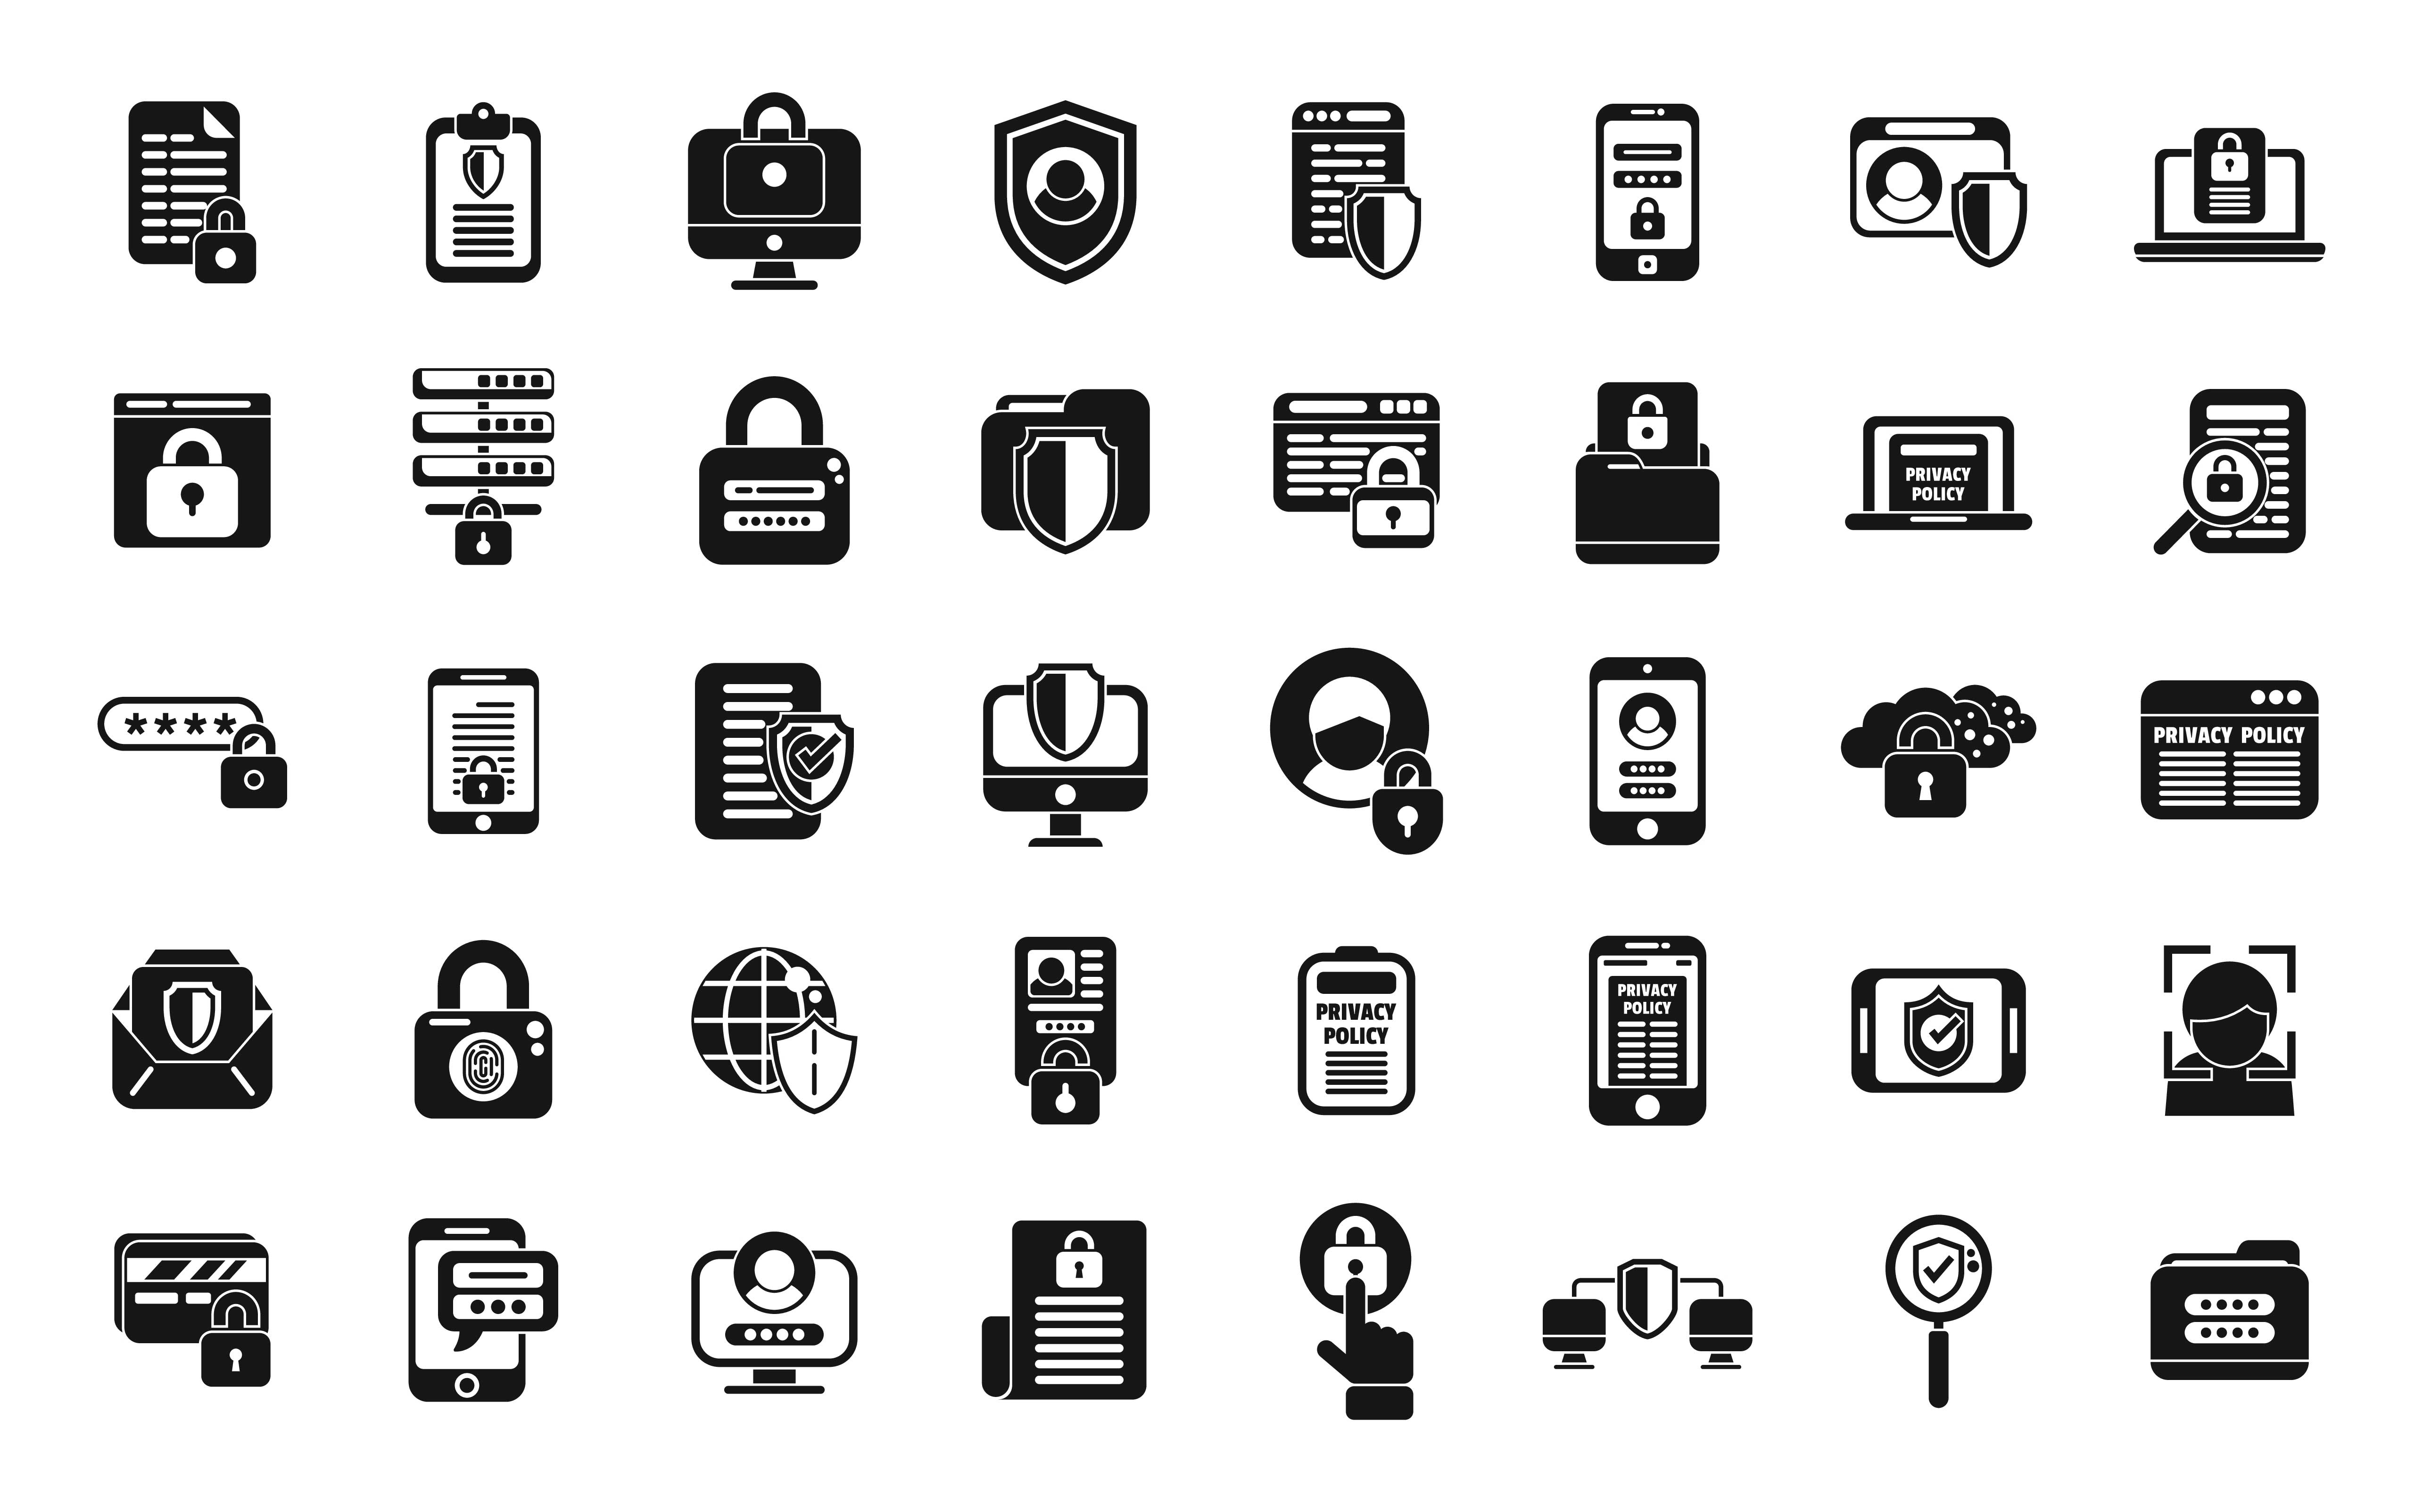 En samling af mange forskellige ikoner såsom mobiler, hængelåse, skjolde, forstørrelsesglas og mere, i sort på hvid baggrund, digital illustration.